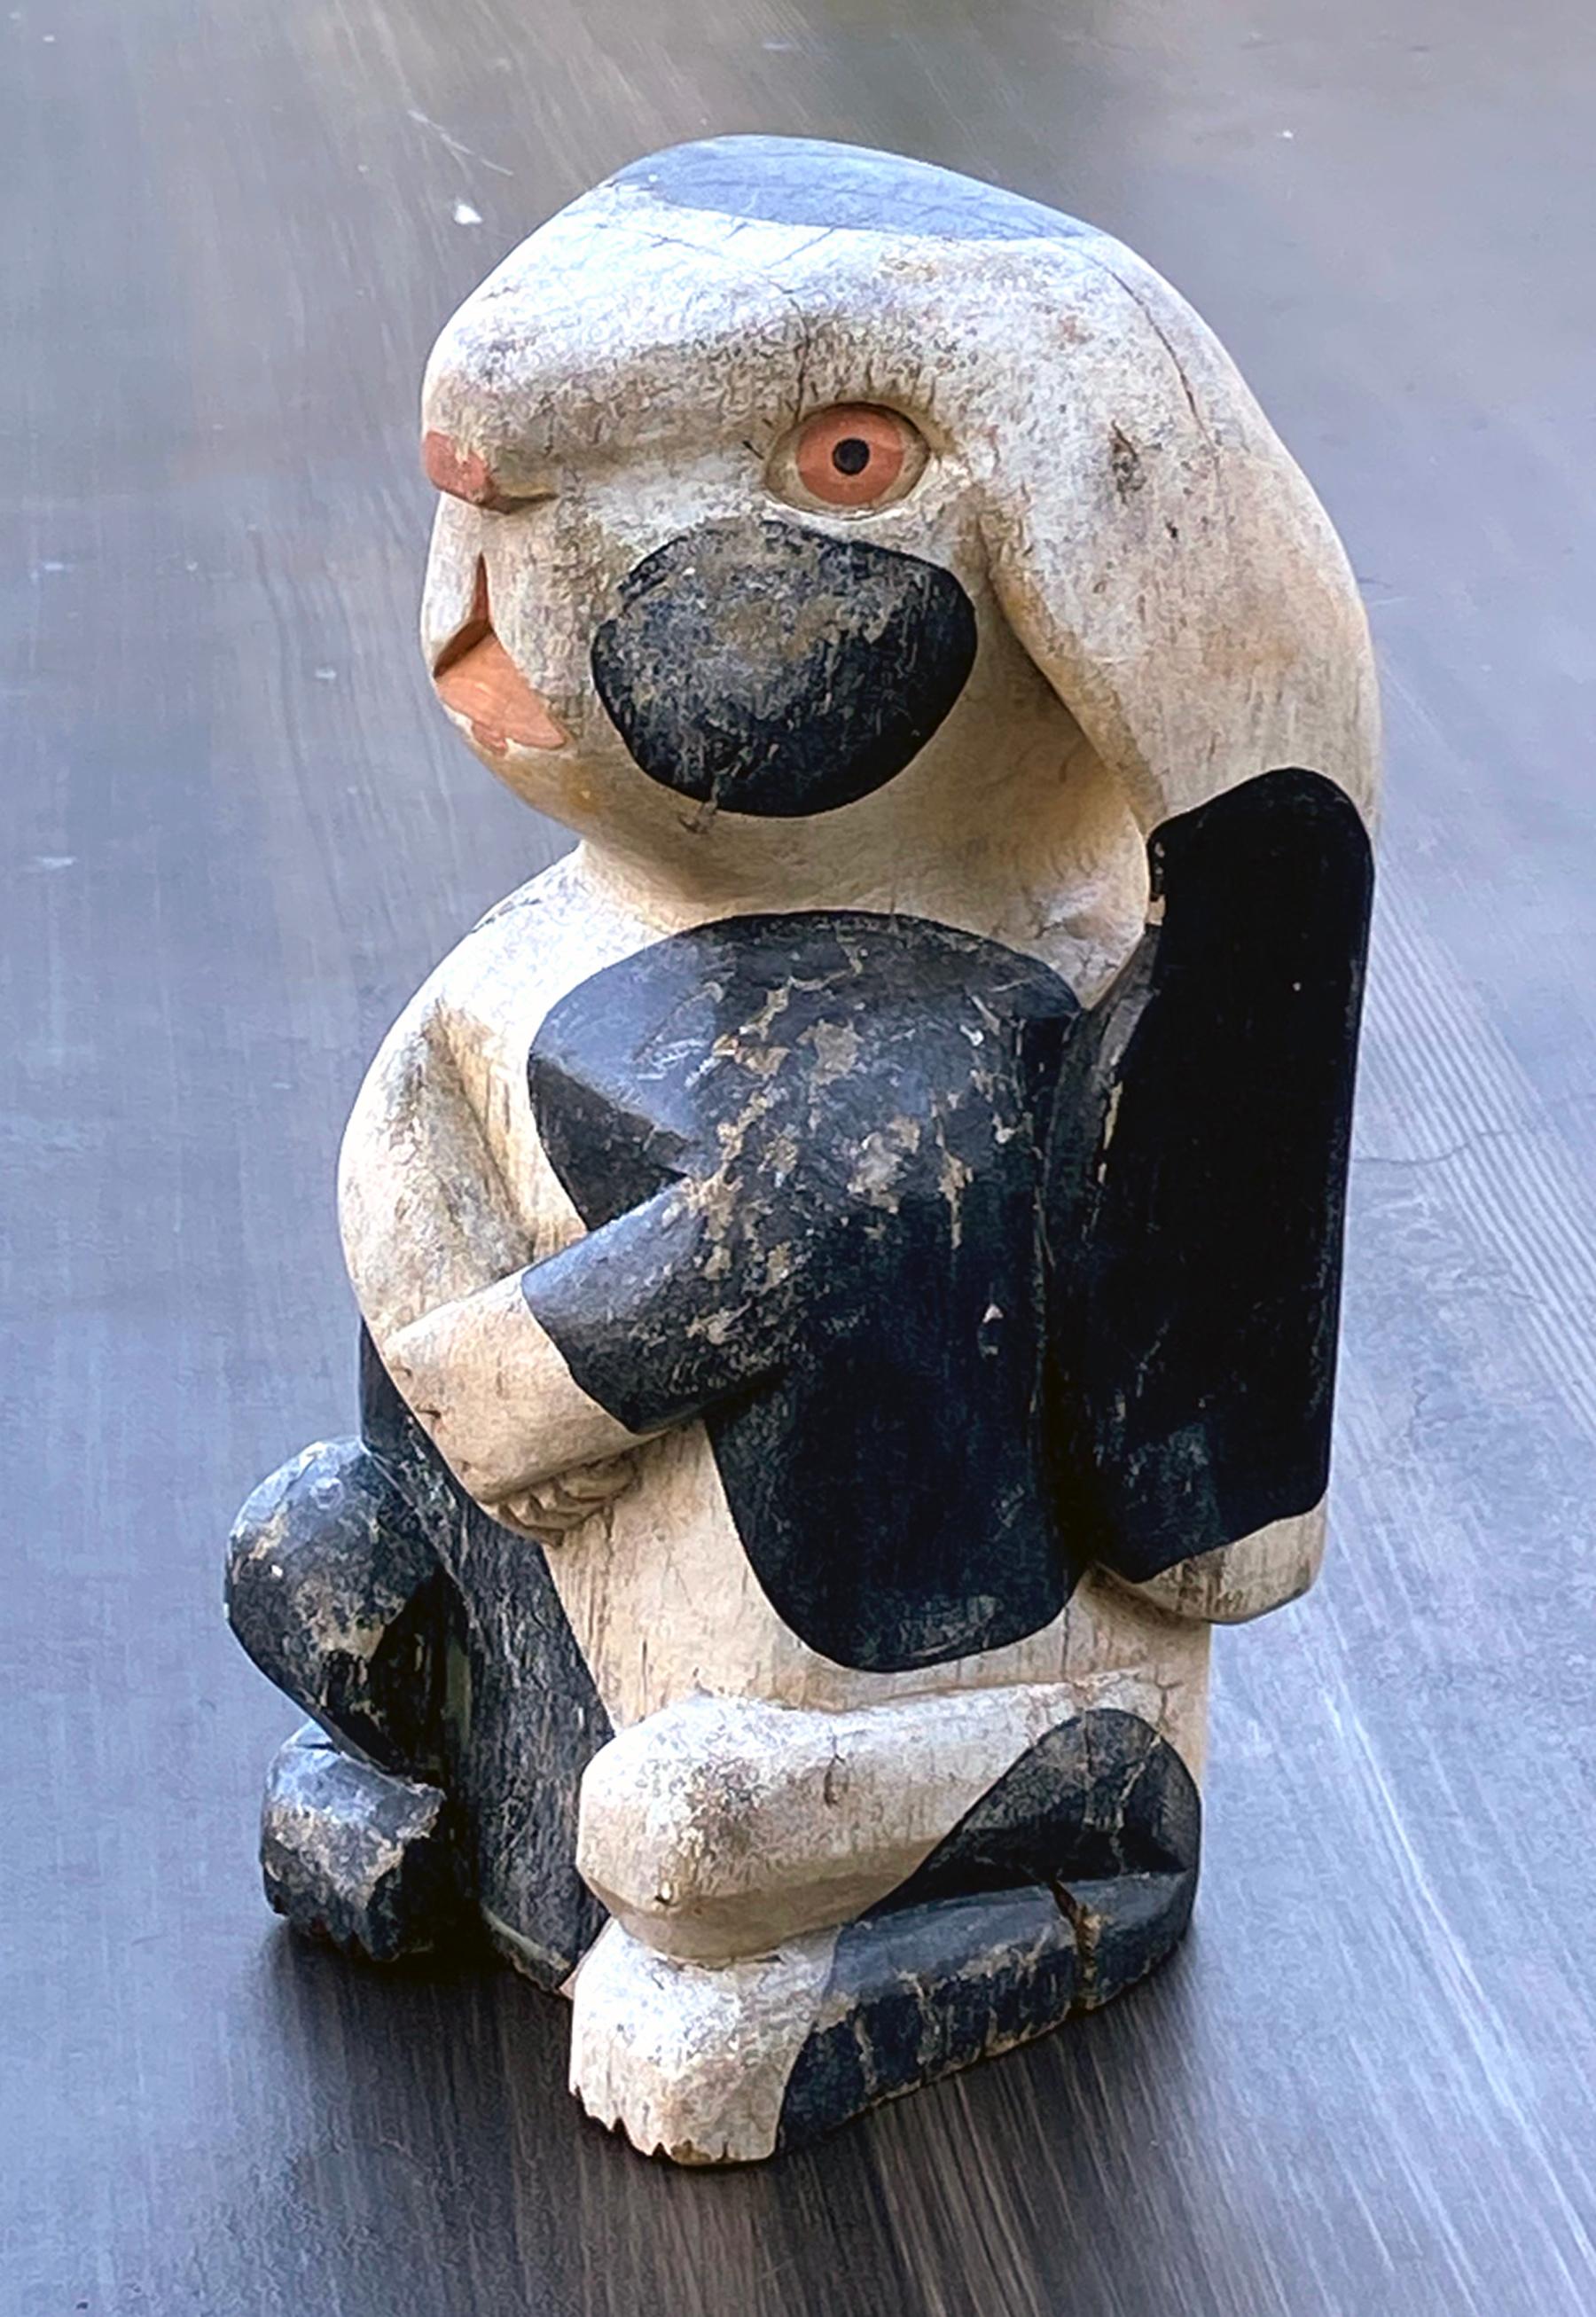 Lapin en bois de style Folk Art, vers les années 1940, canadien. Longues oreilles et bras croisés avec une tête de style Picasso. Le lapin est assis bien droit sur ses hanches en bois sculpté polychromé.